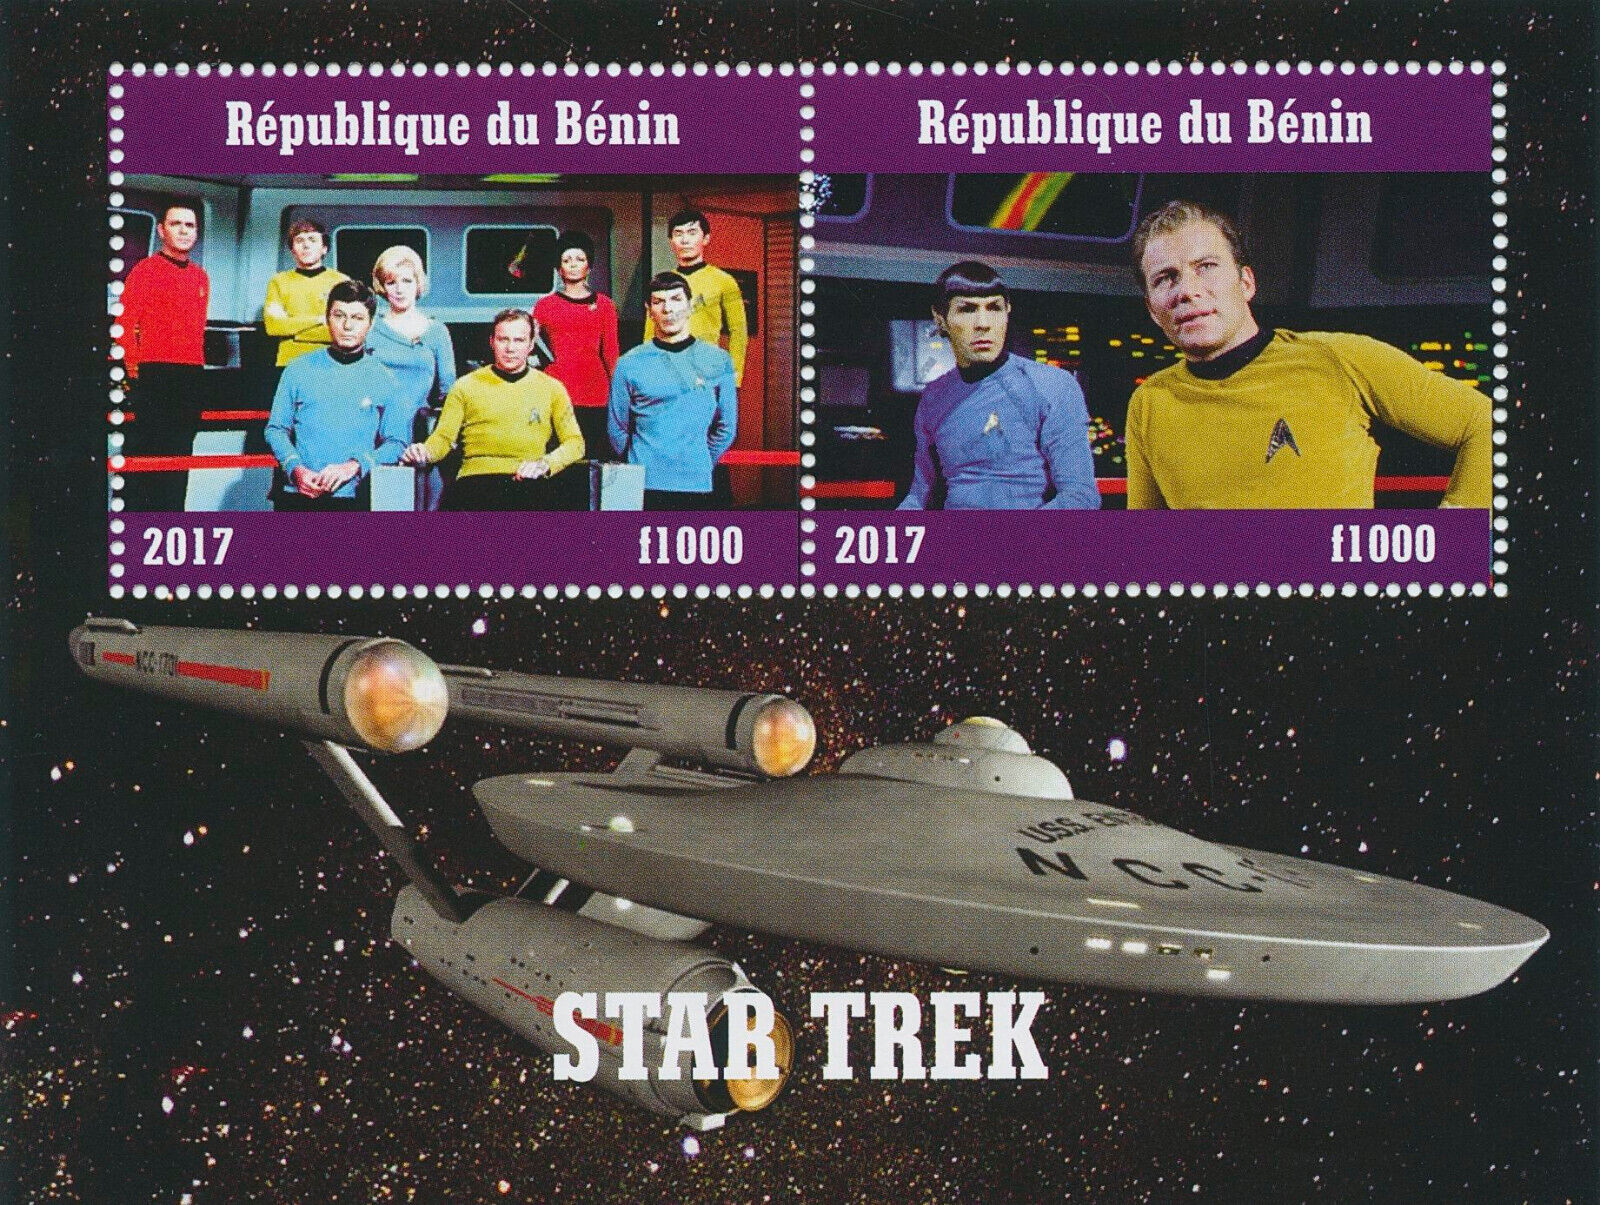 Star Trek stamps from Benin